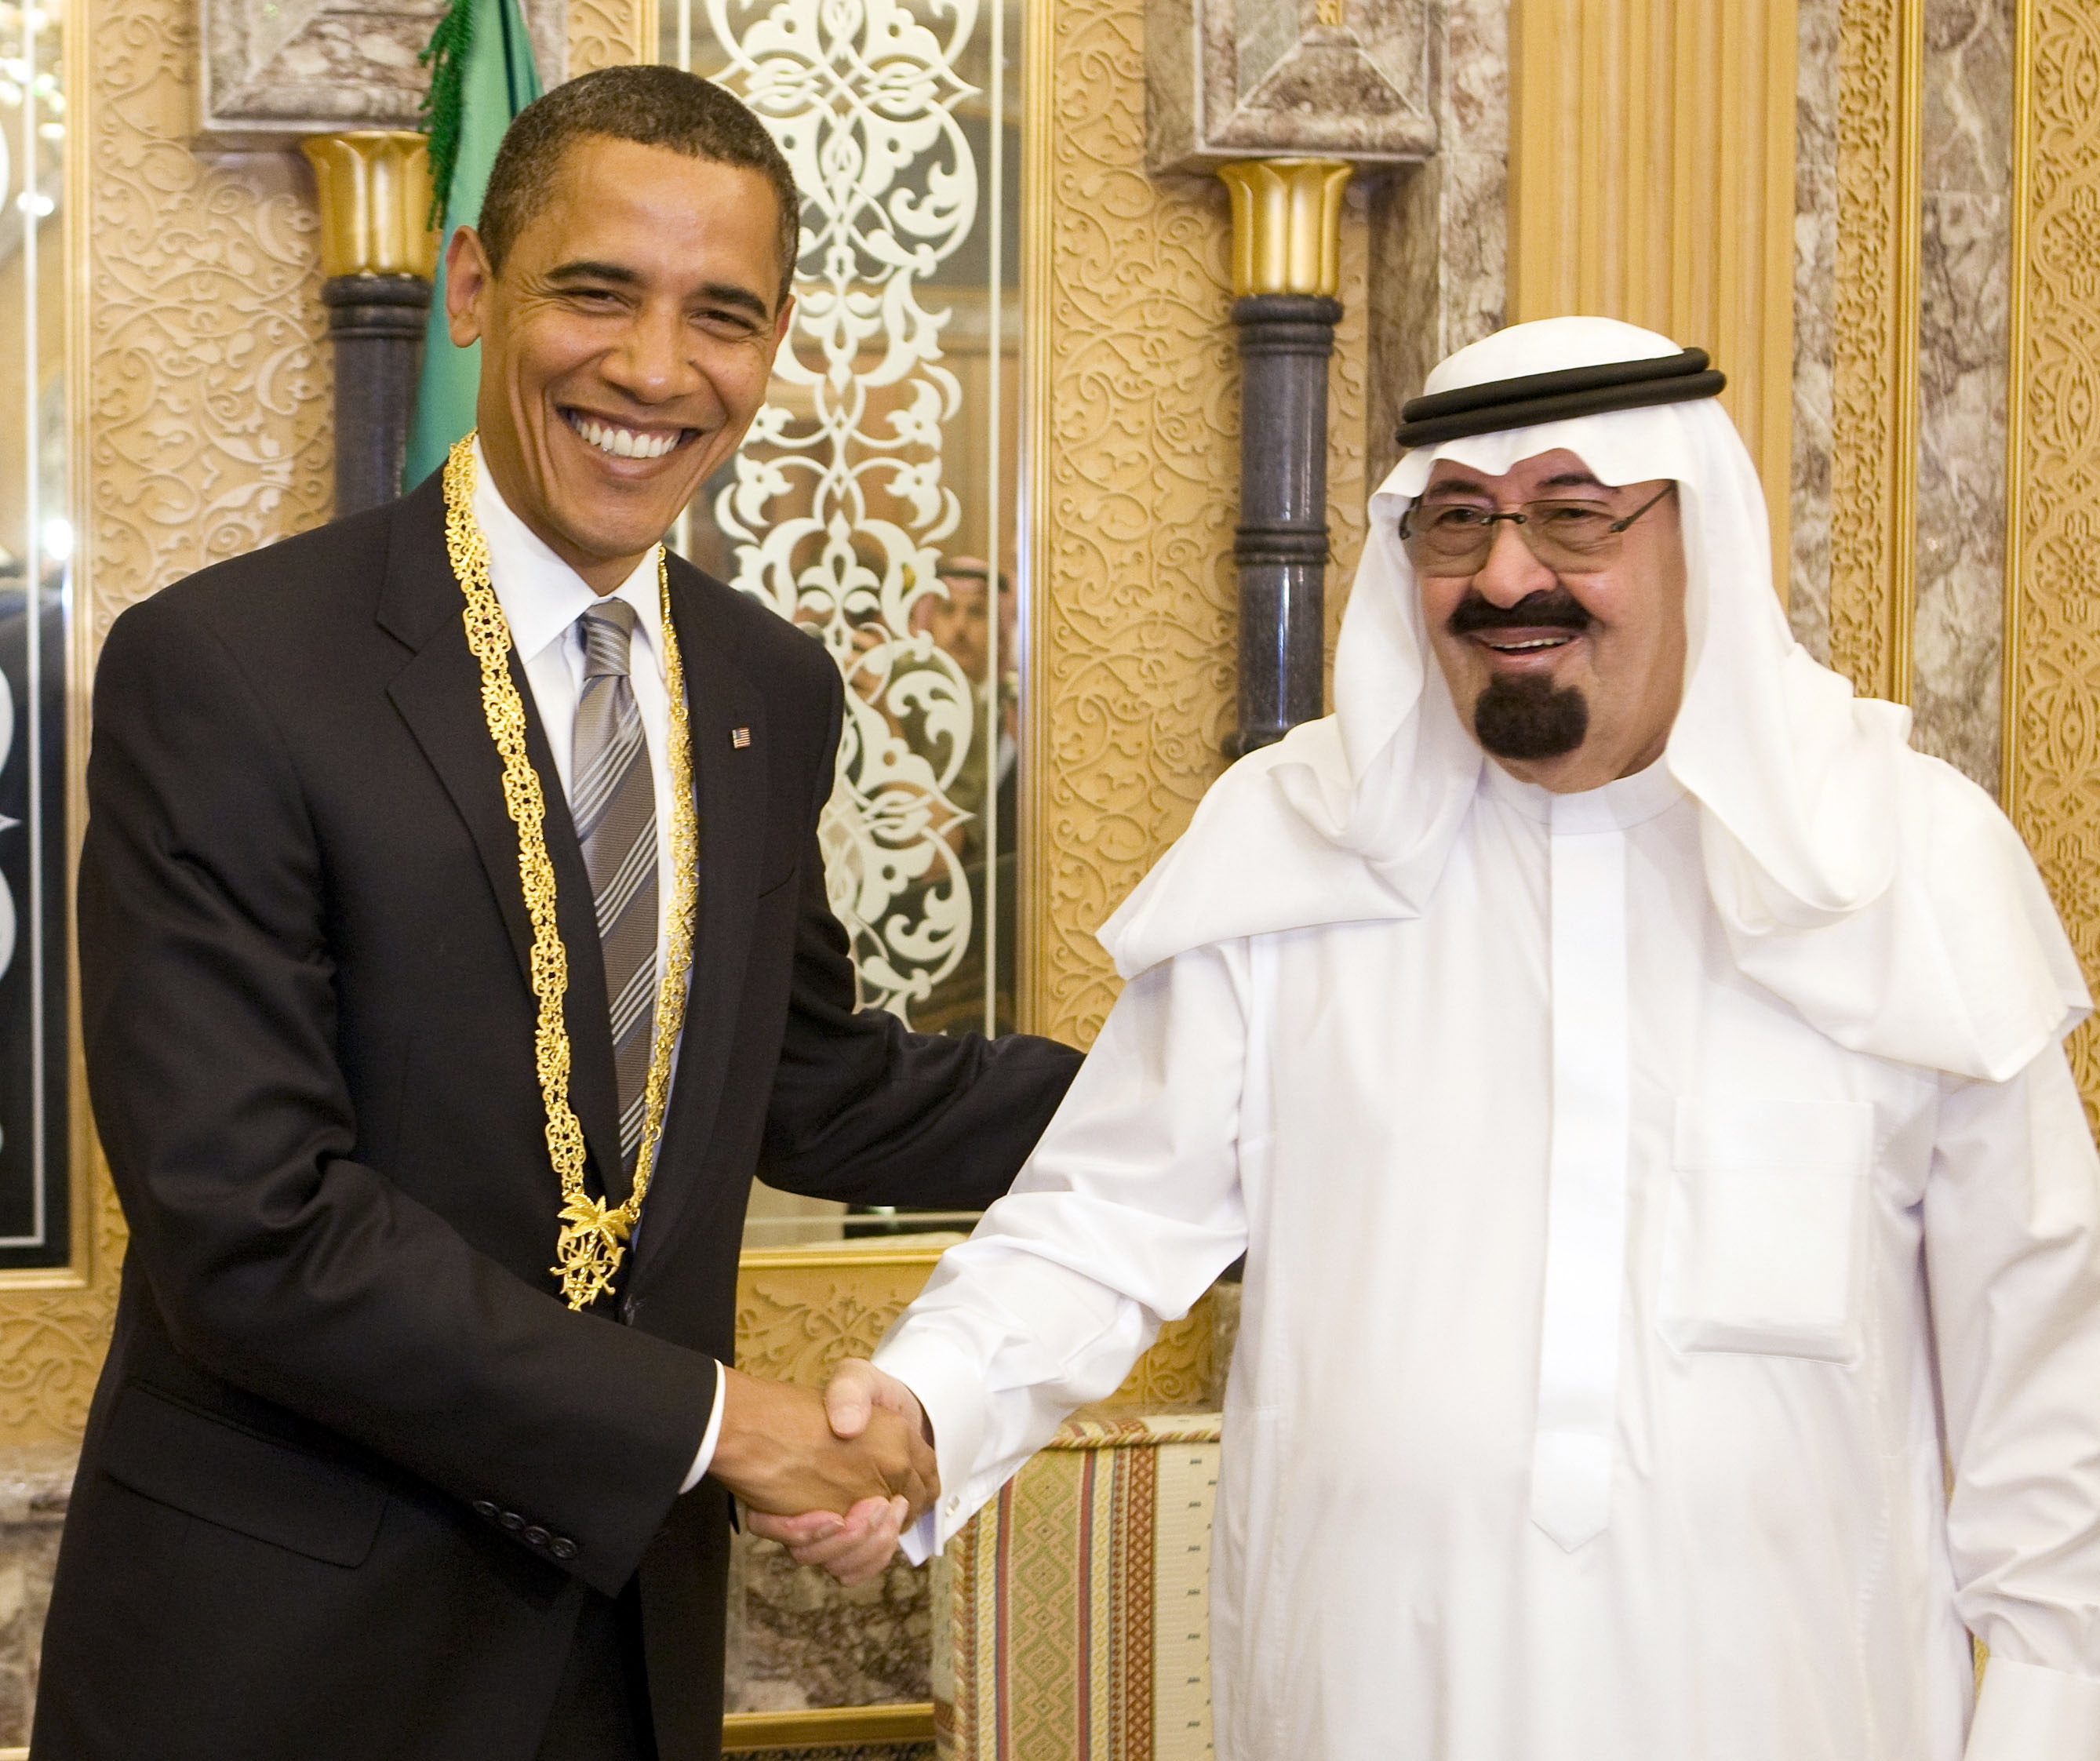 الرئيس الأميركي أوباما يستلم هدية من الملك عبد الله عقب زيارته للسعودية في 2009 (رويترز)